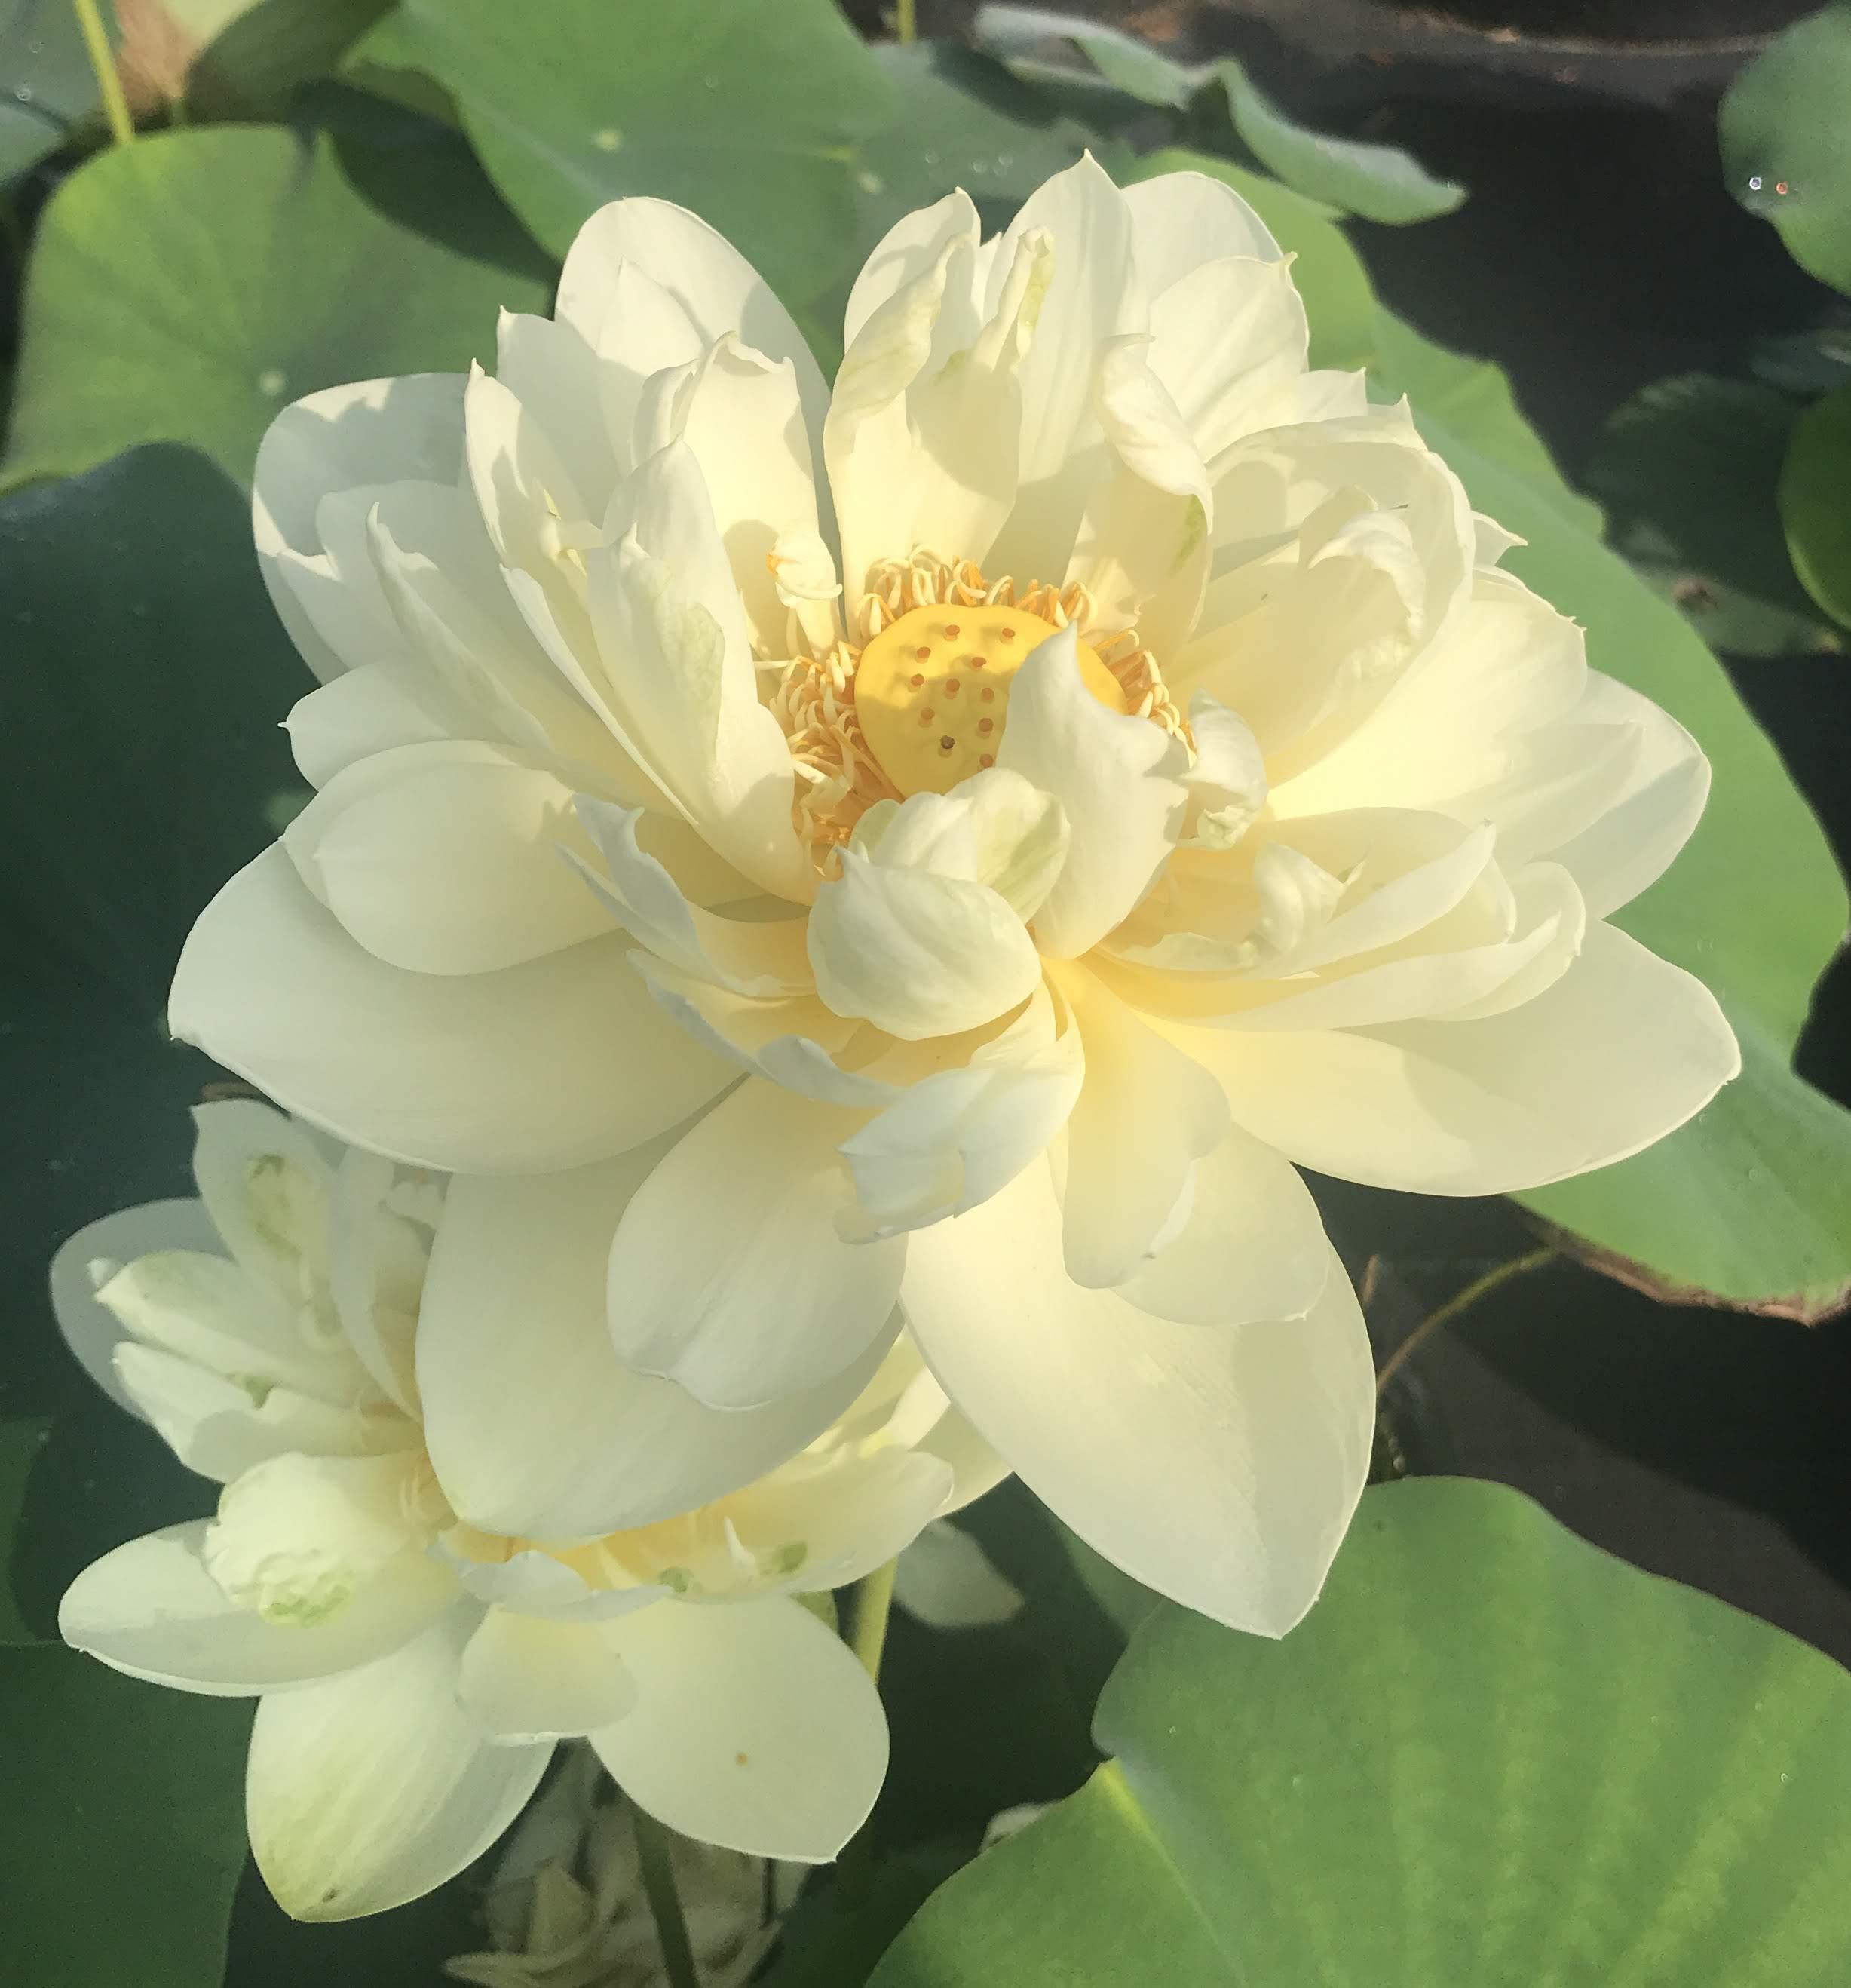 White Chrysanthemum Lotus (Bare Root) - Play It Koi